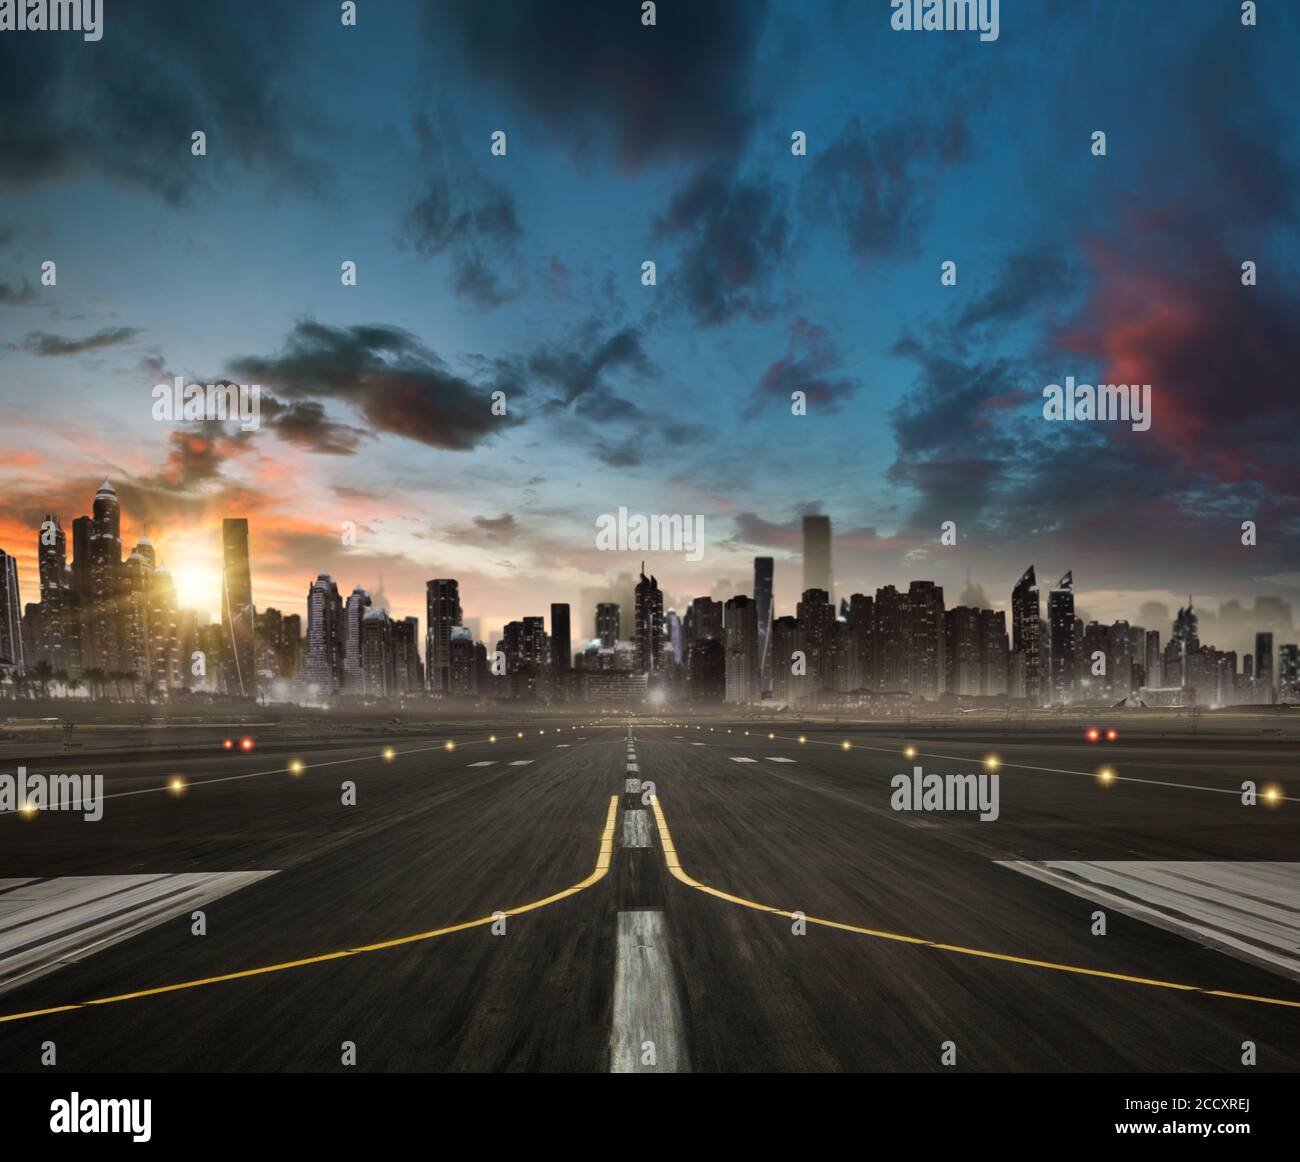 Airplane vide en direction de la ville moderne avec des gratte-ciel de silhouettes. Voyages et transport Banque D'Images